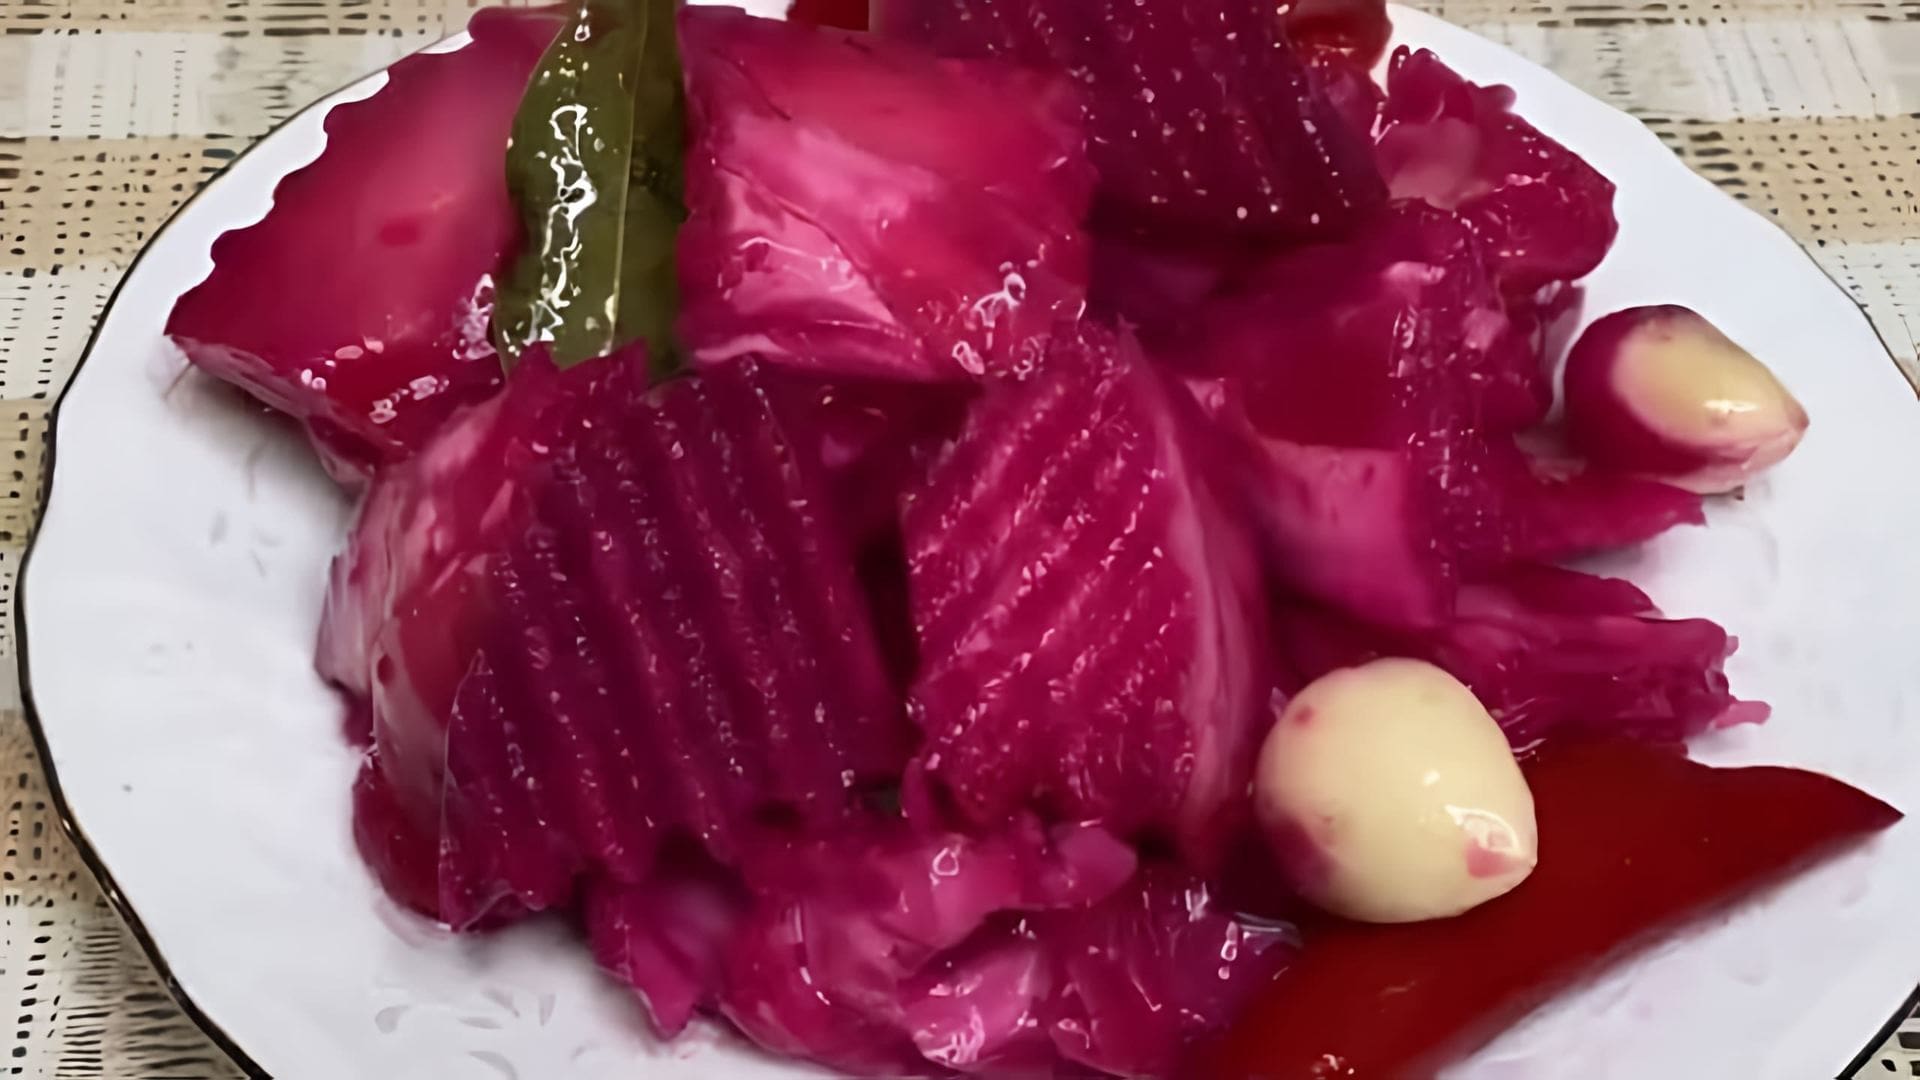 Маринованная капуста со свёклой "Пелюстка" - это вкусное и полезное блюдо, которое можно приготовить в домашних условиях